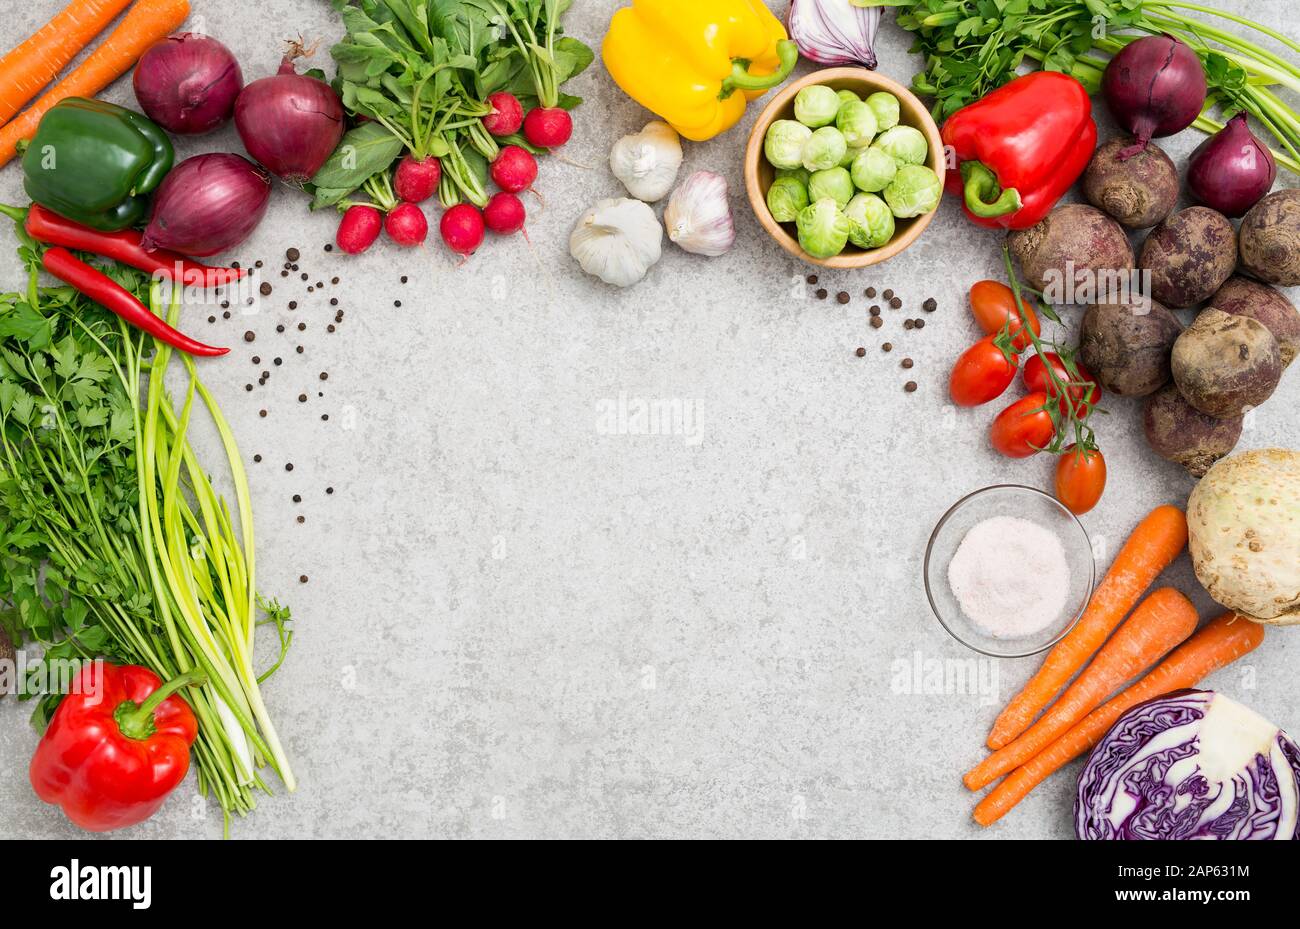 Contexte alimentaire ingrédient pour la cuisson de légumes végétarien repas concept cuisine vue du haut conseil de la santé de l'espace table marron blanc - concept image Banque D'Images